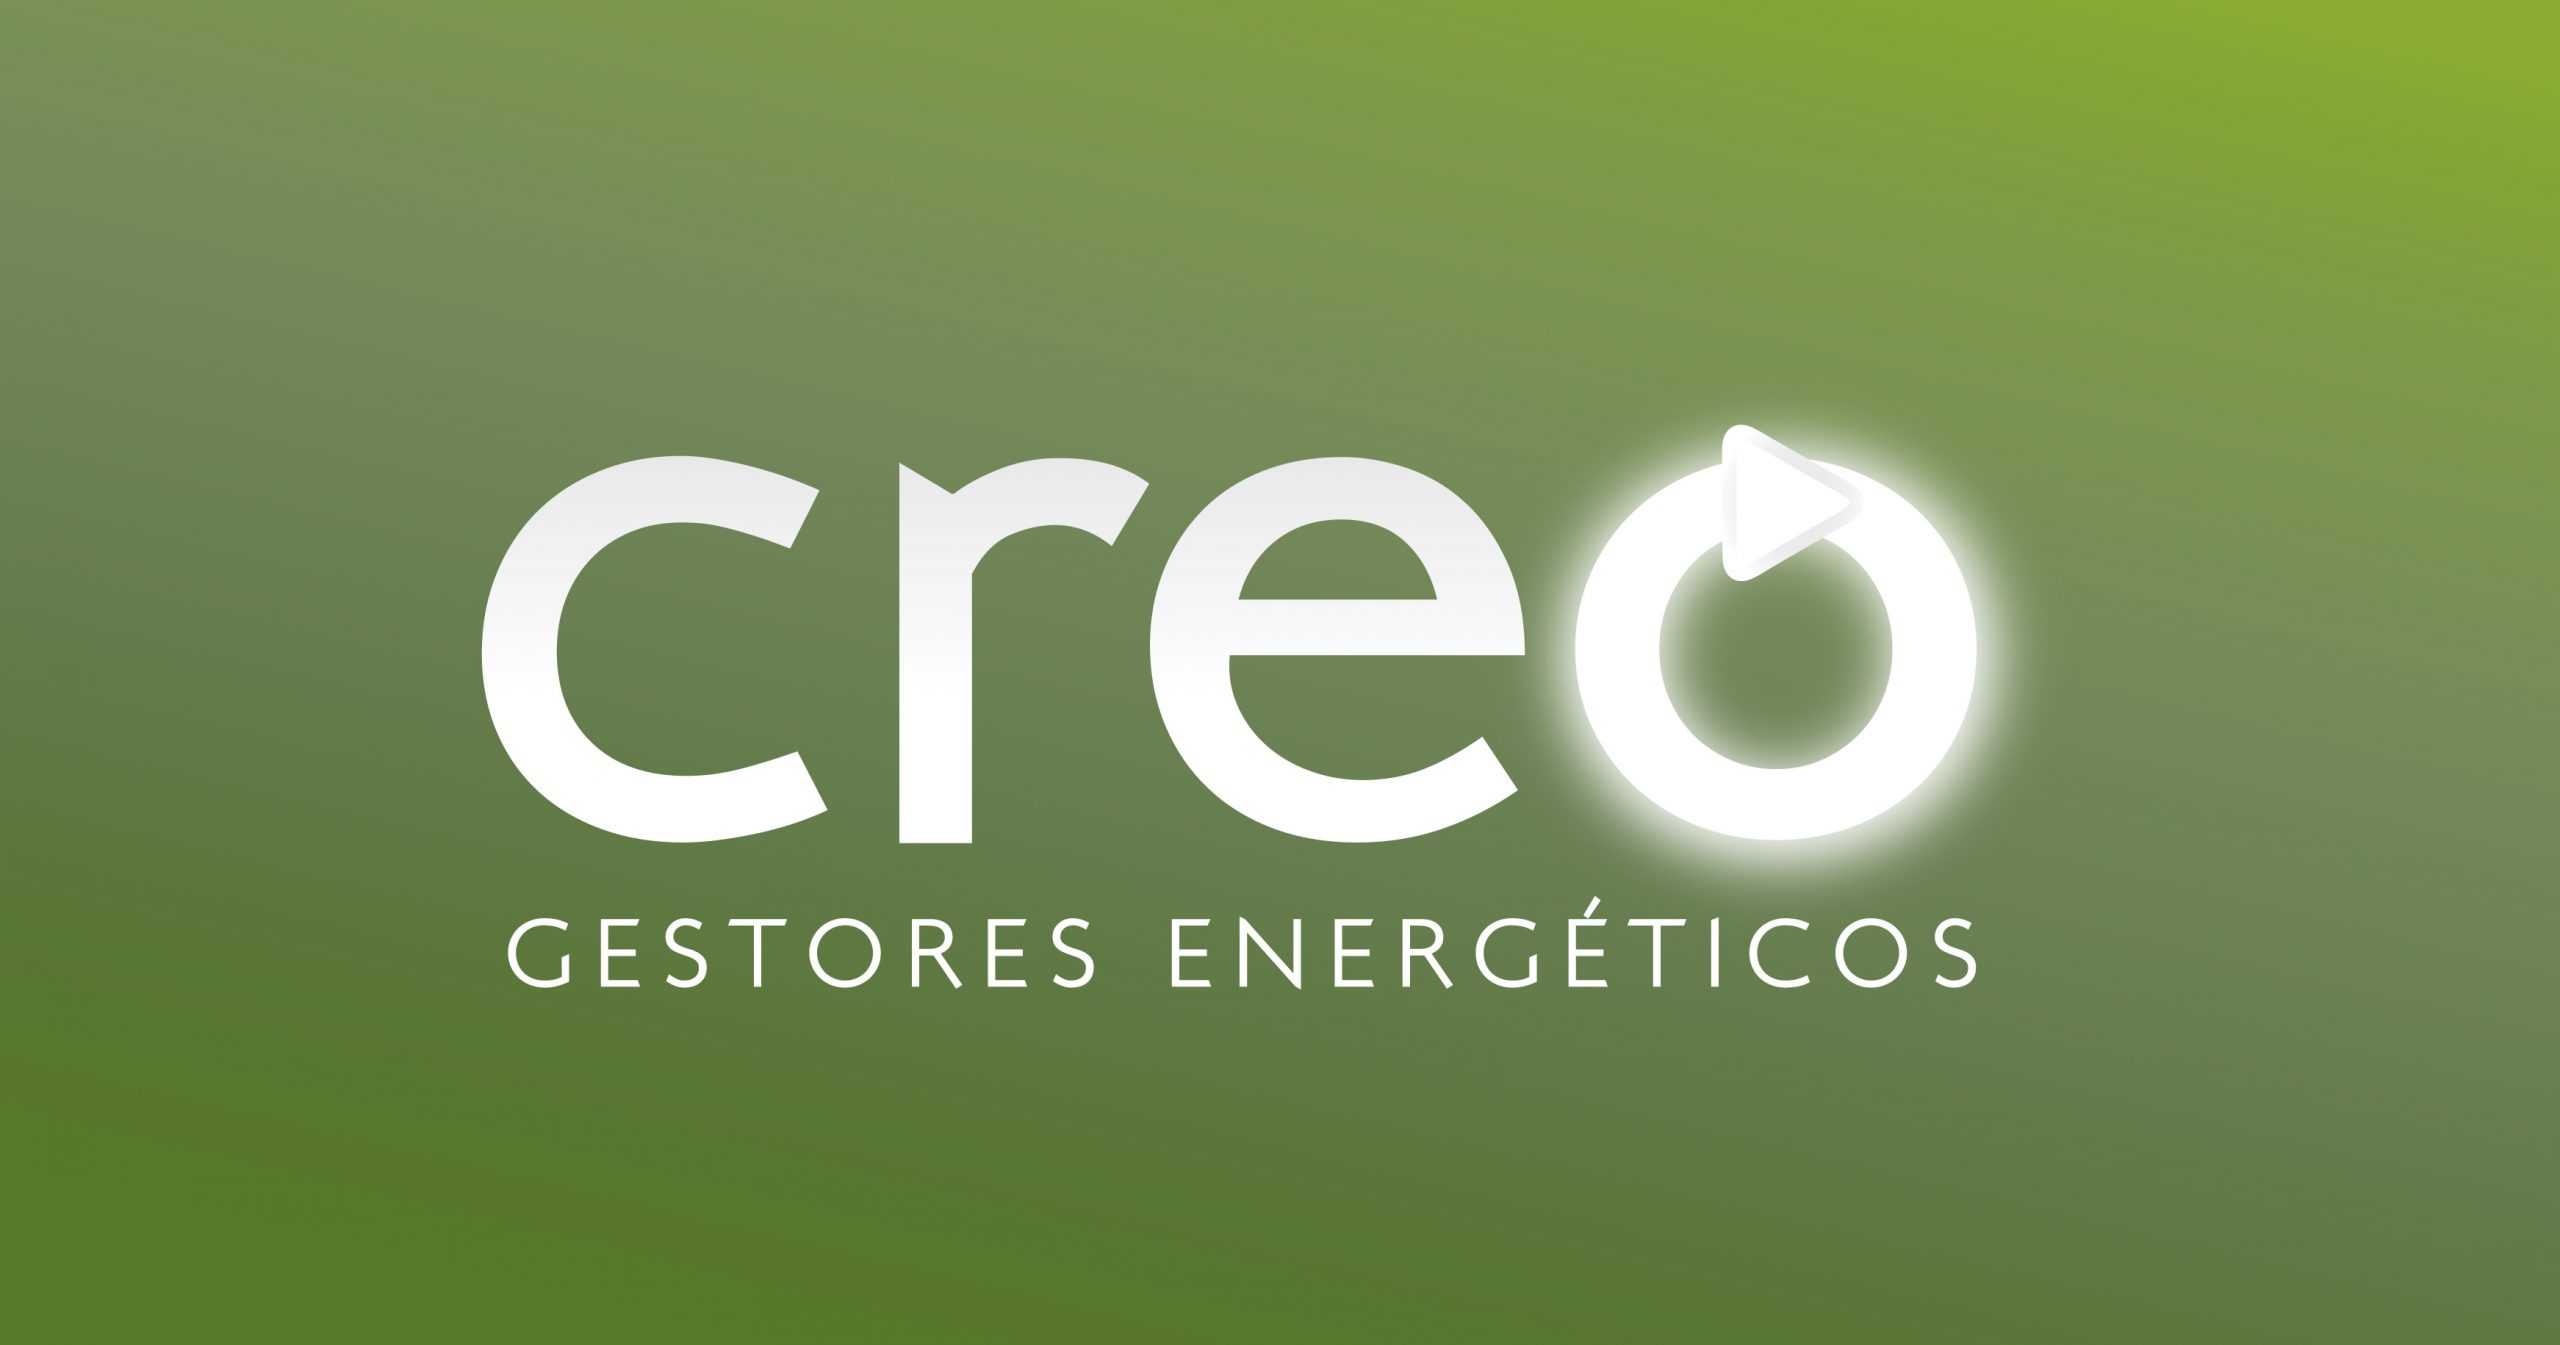 Creo gestores energéticos en Burgos